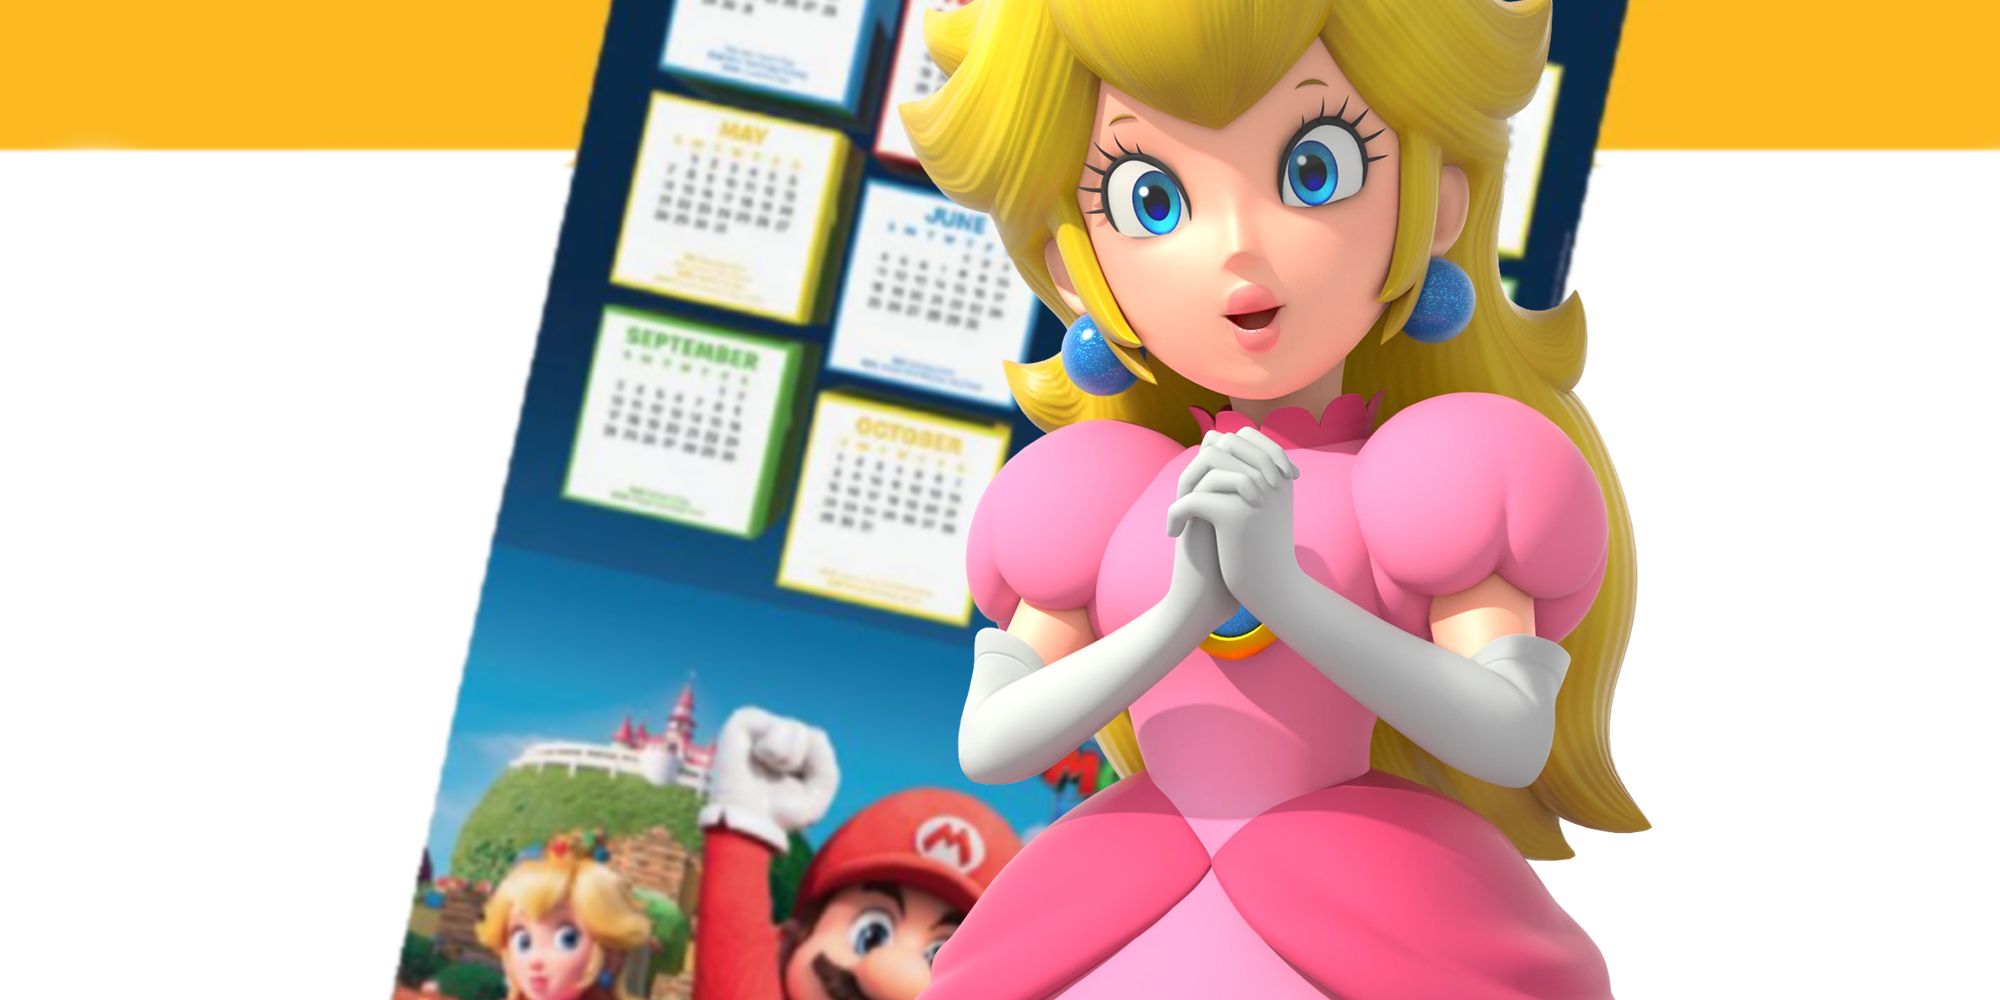 Princess Peach S Super Mario Bros Movie Design Reveal vrogue.co